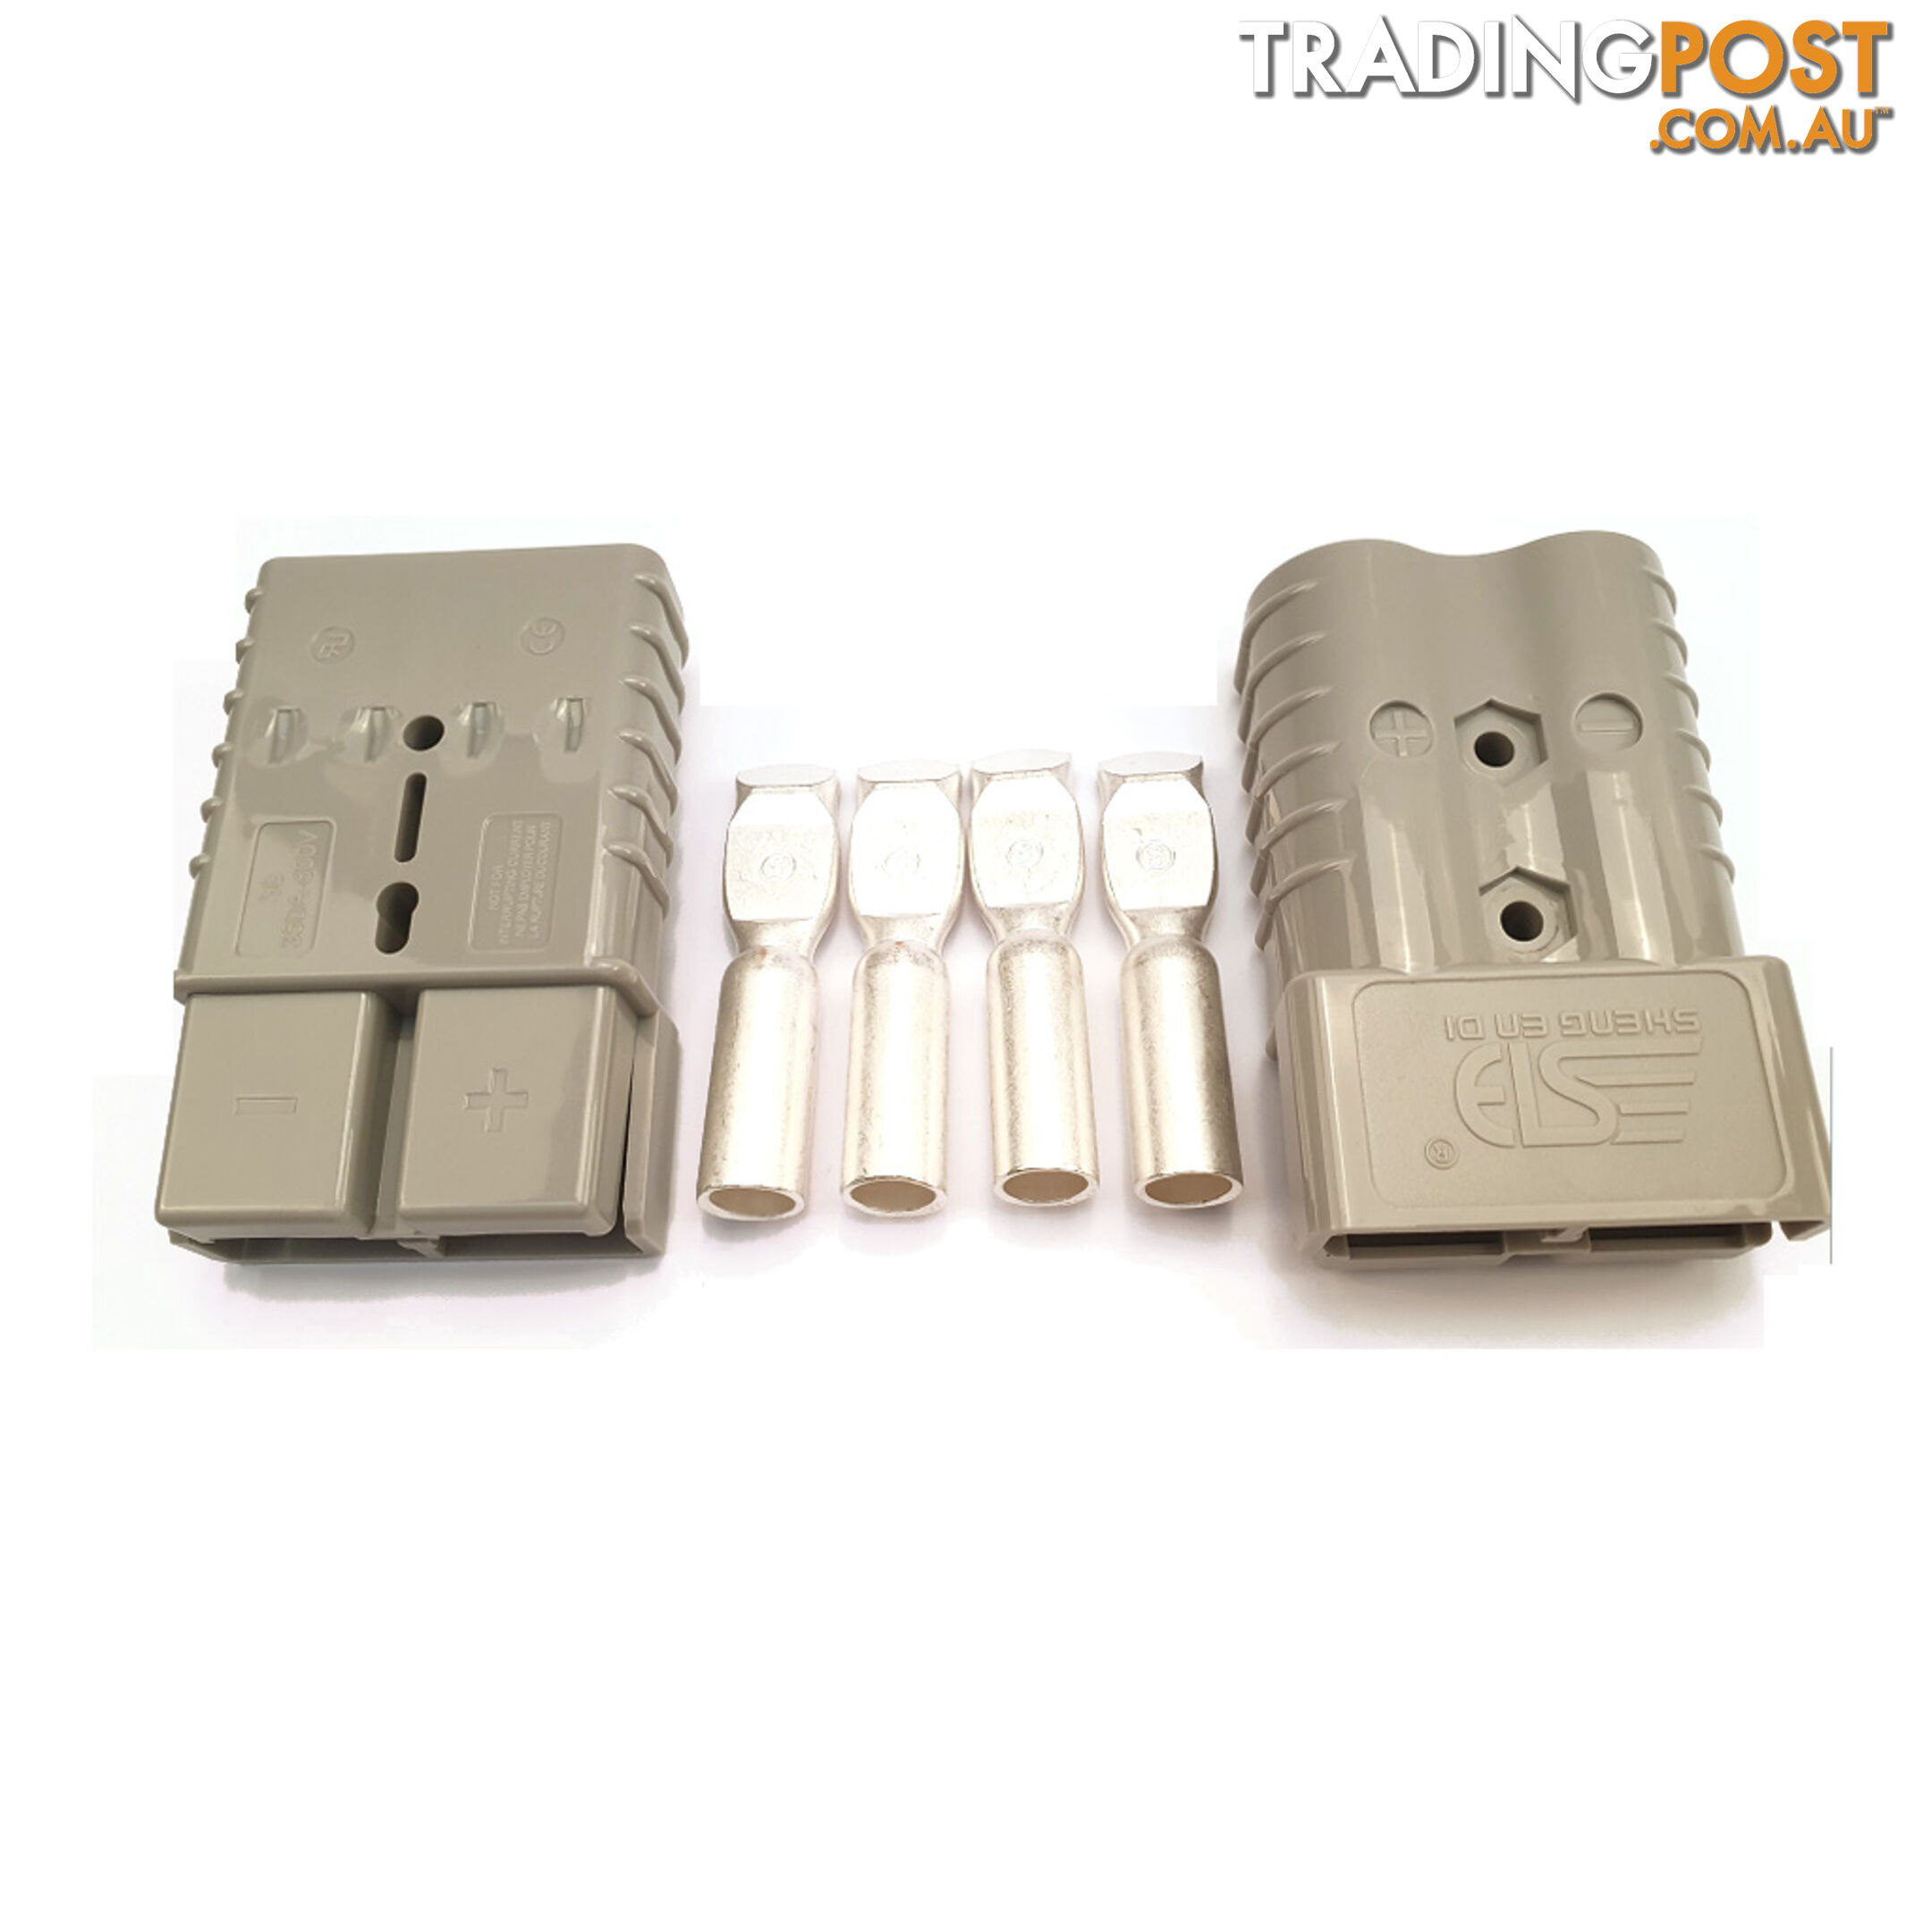 350 amp Anderson Plugs x 2 with Terminals Grey SKU - 35ampAndox2